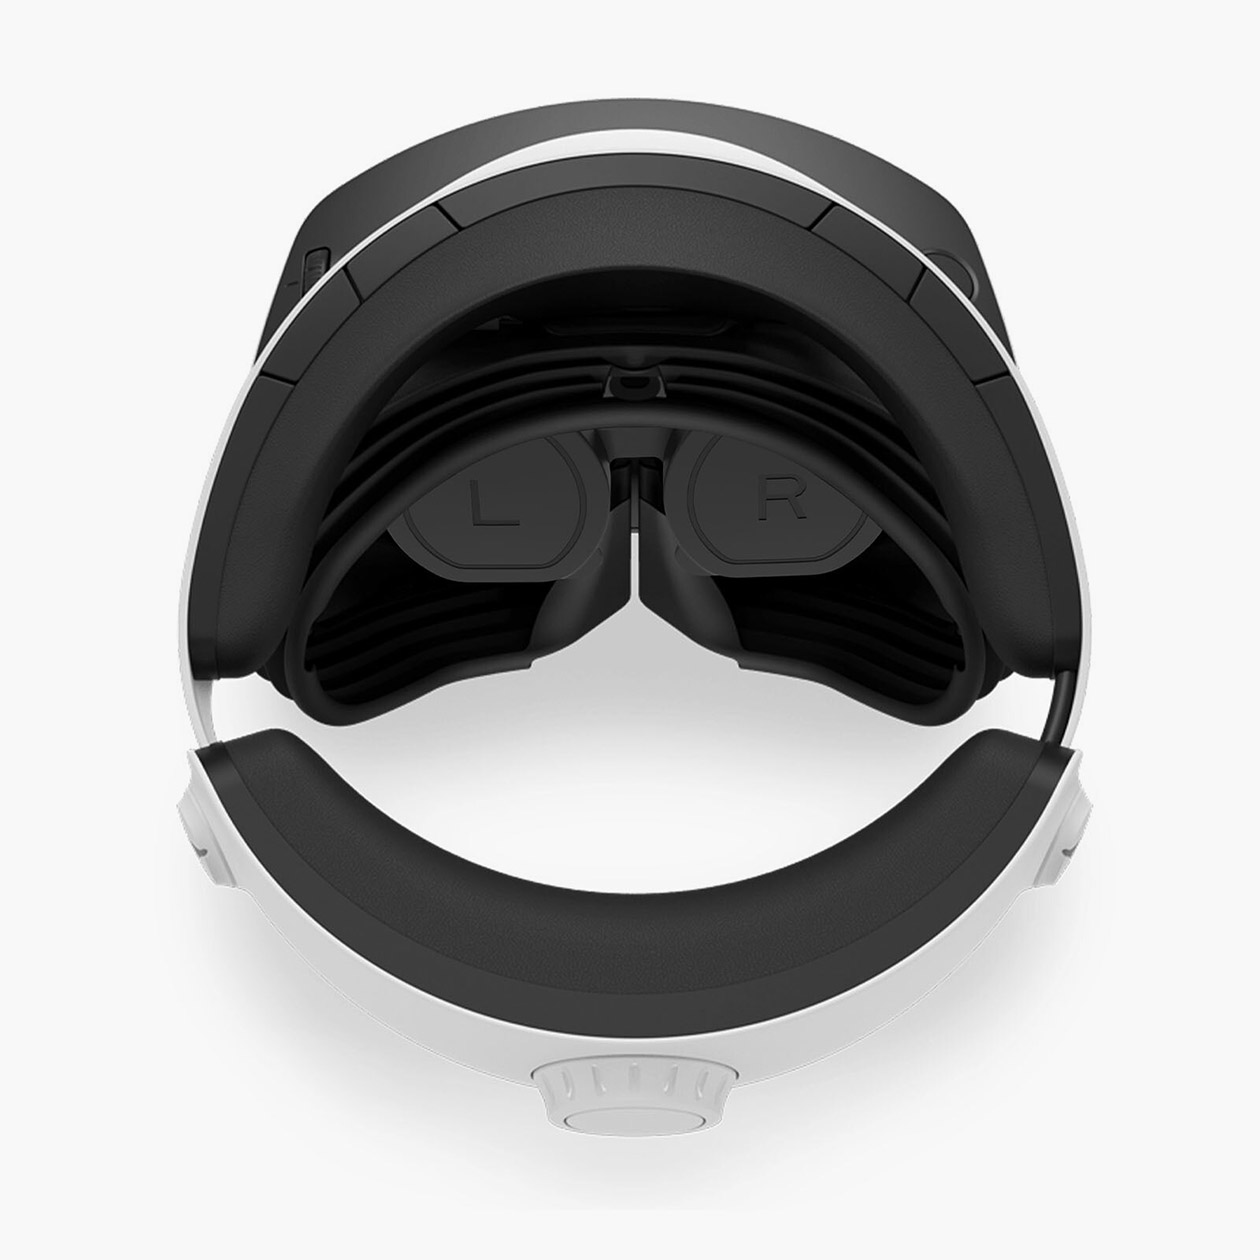 У PlayStation VR2 используются резиновые «шторки», которые хорошо отсекают свет снаружи не только сверху и сбоку, но и вокруг носа